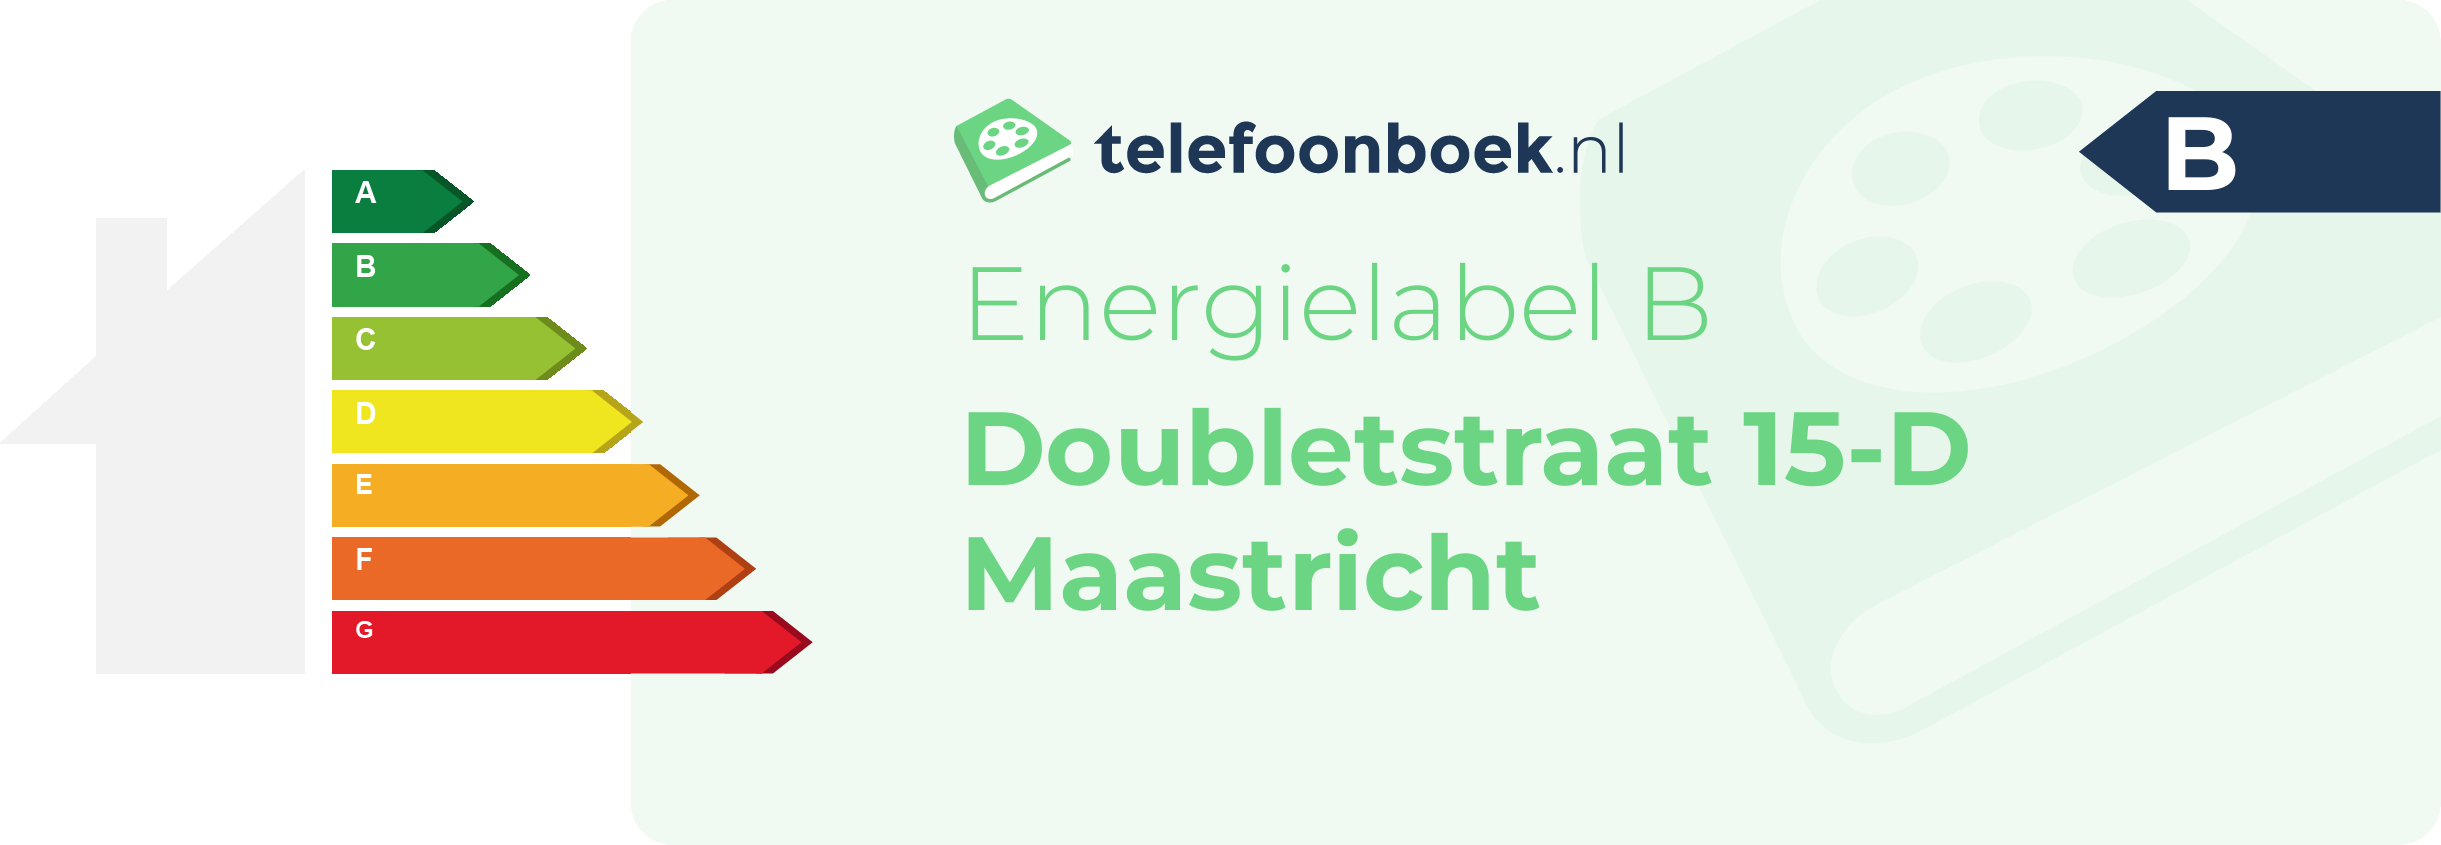 Energielabel Doubletstraat 15-D Maastricht